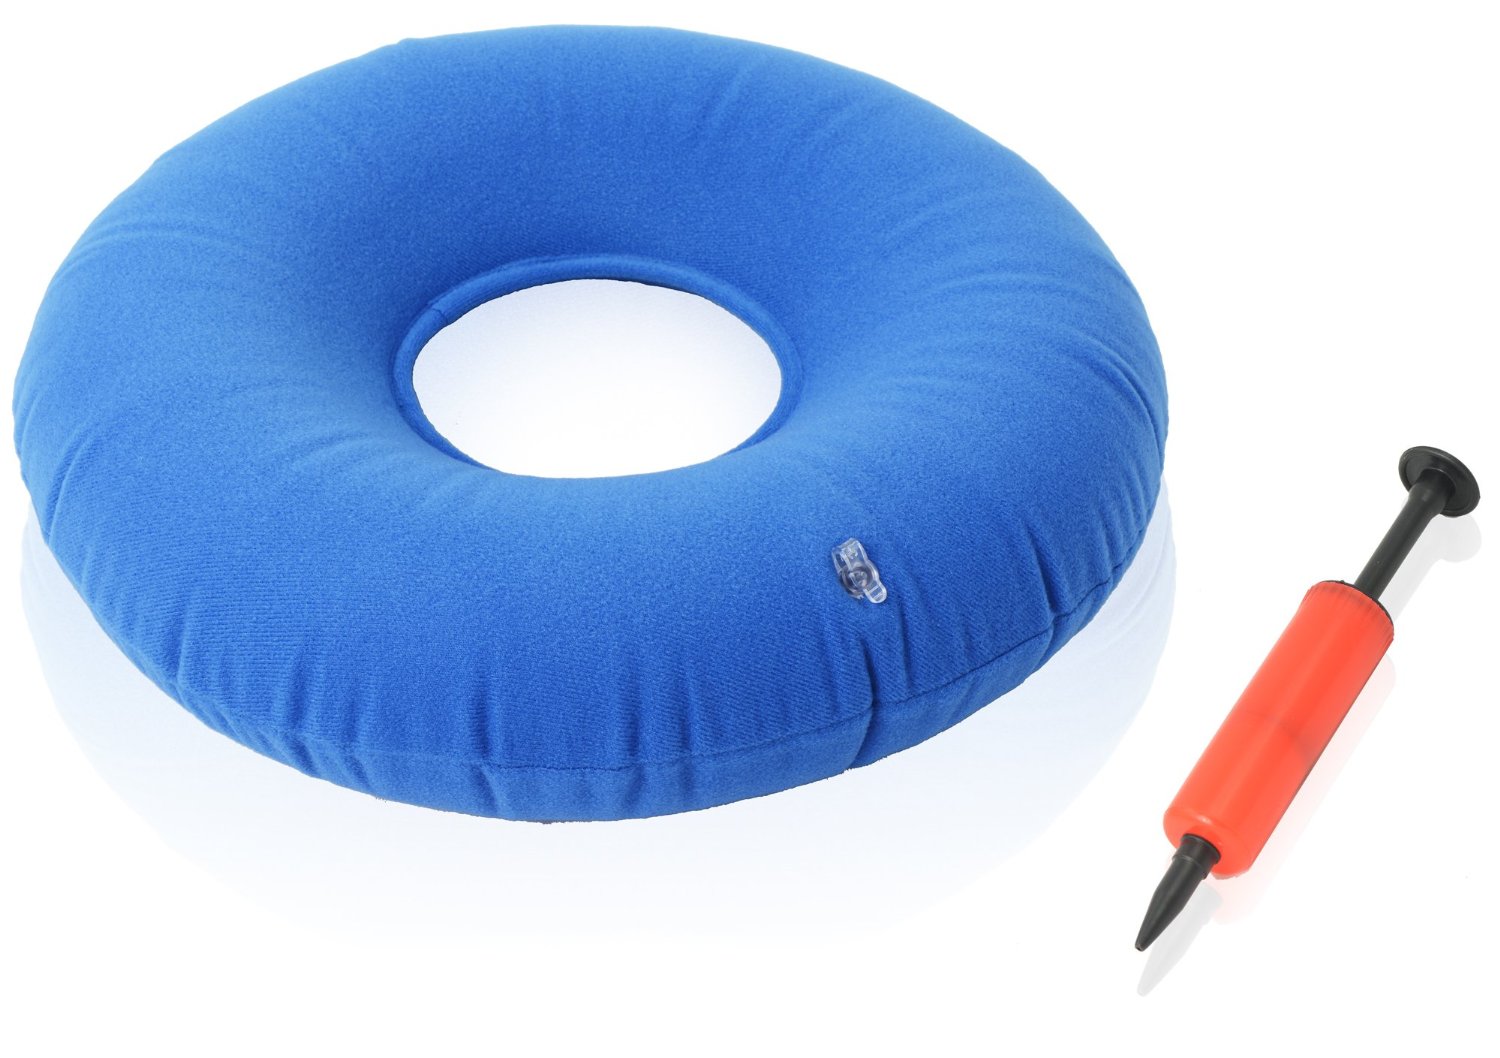 Round Inflatable Air Cushion